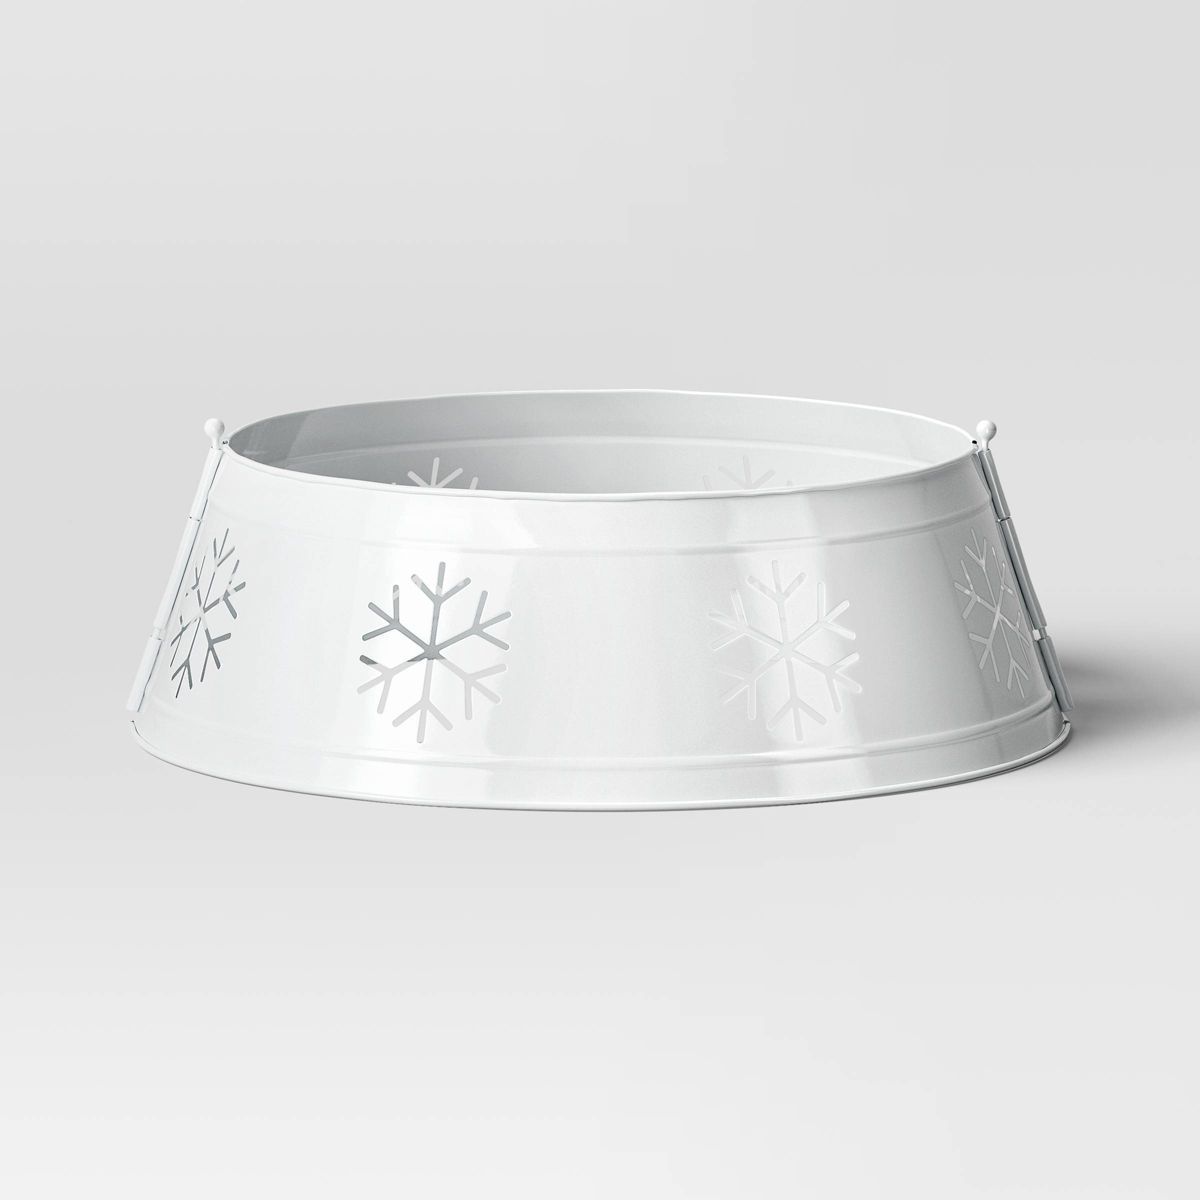 25" Metal Christmas Tree Collar with Die Cut Snowflakes White - Wondershop™ | Target